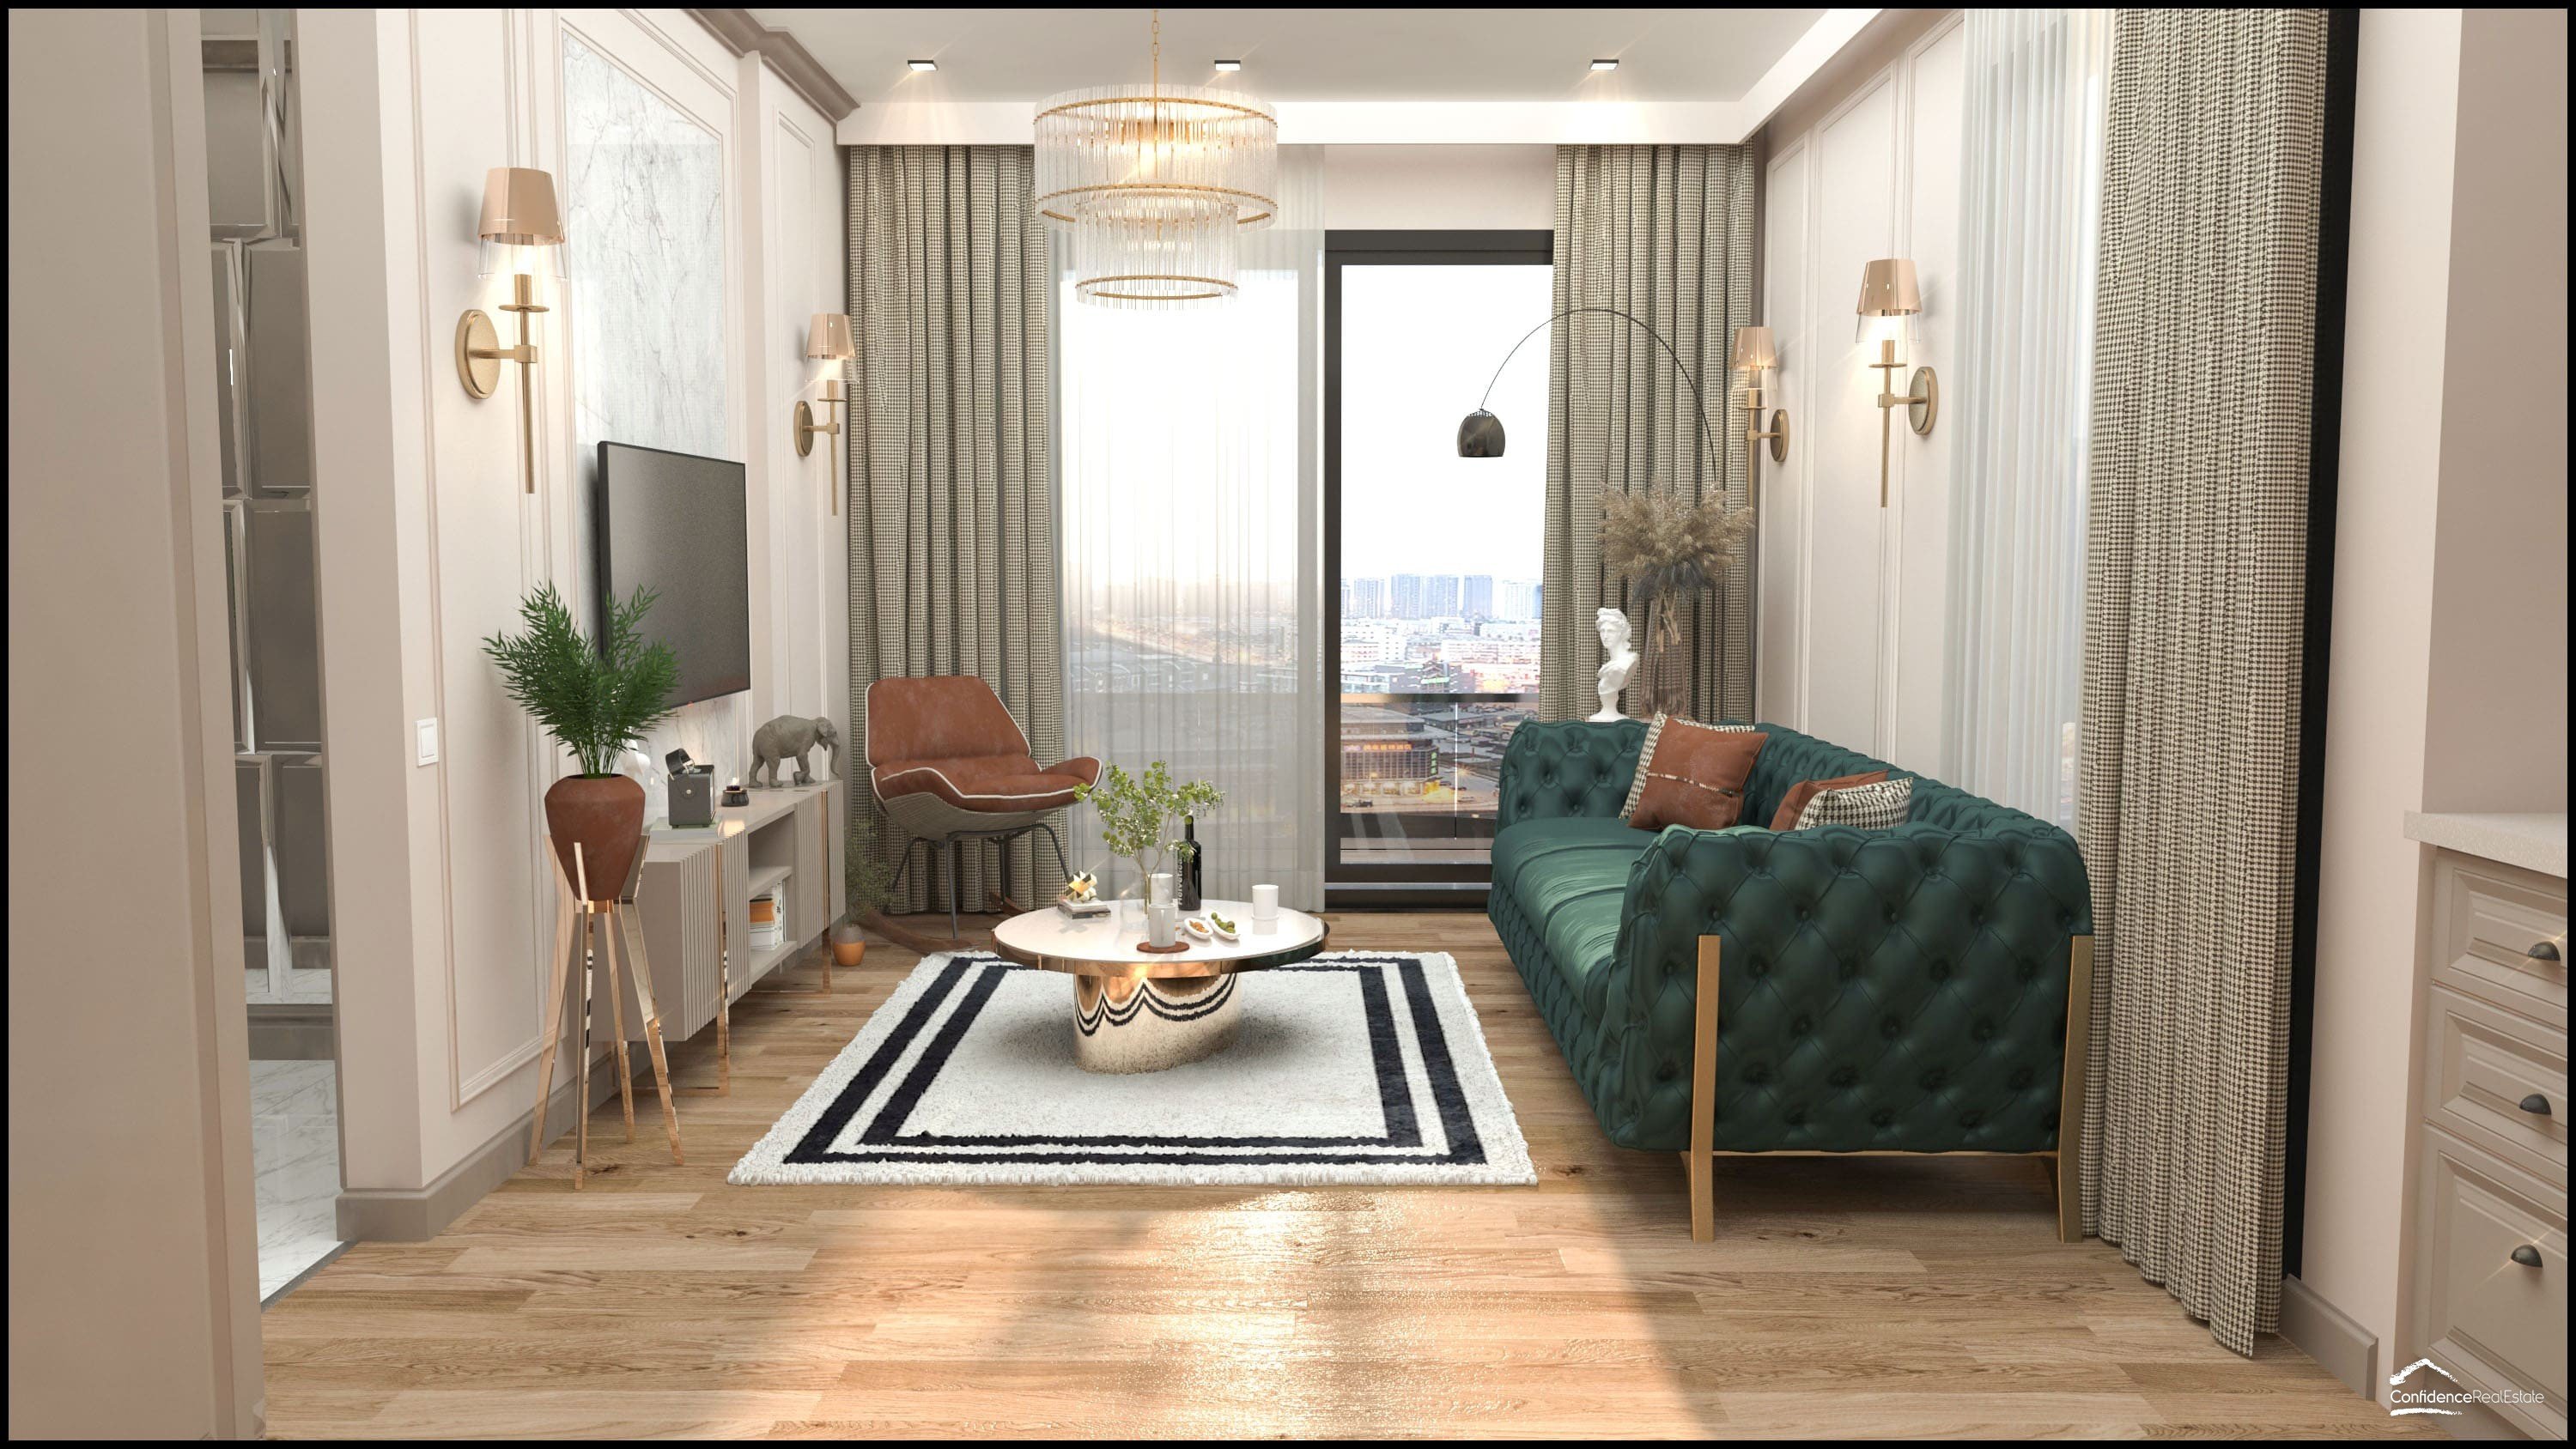 Popüler tatil beldesi Mersin'de modern apartman kompleksi